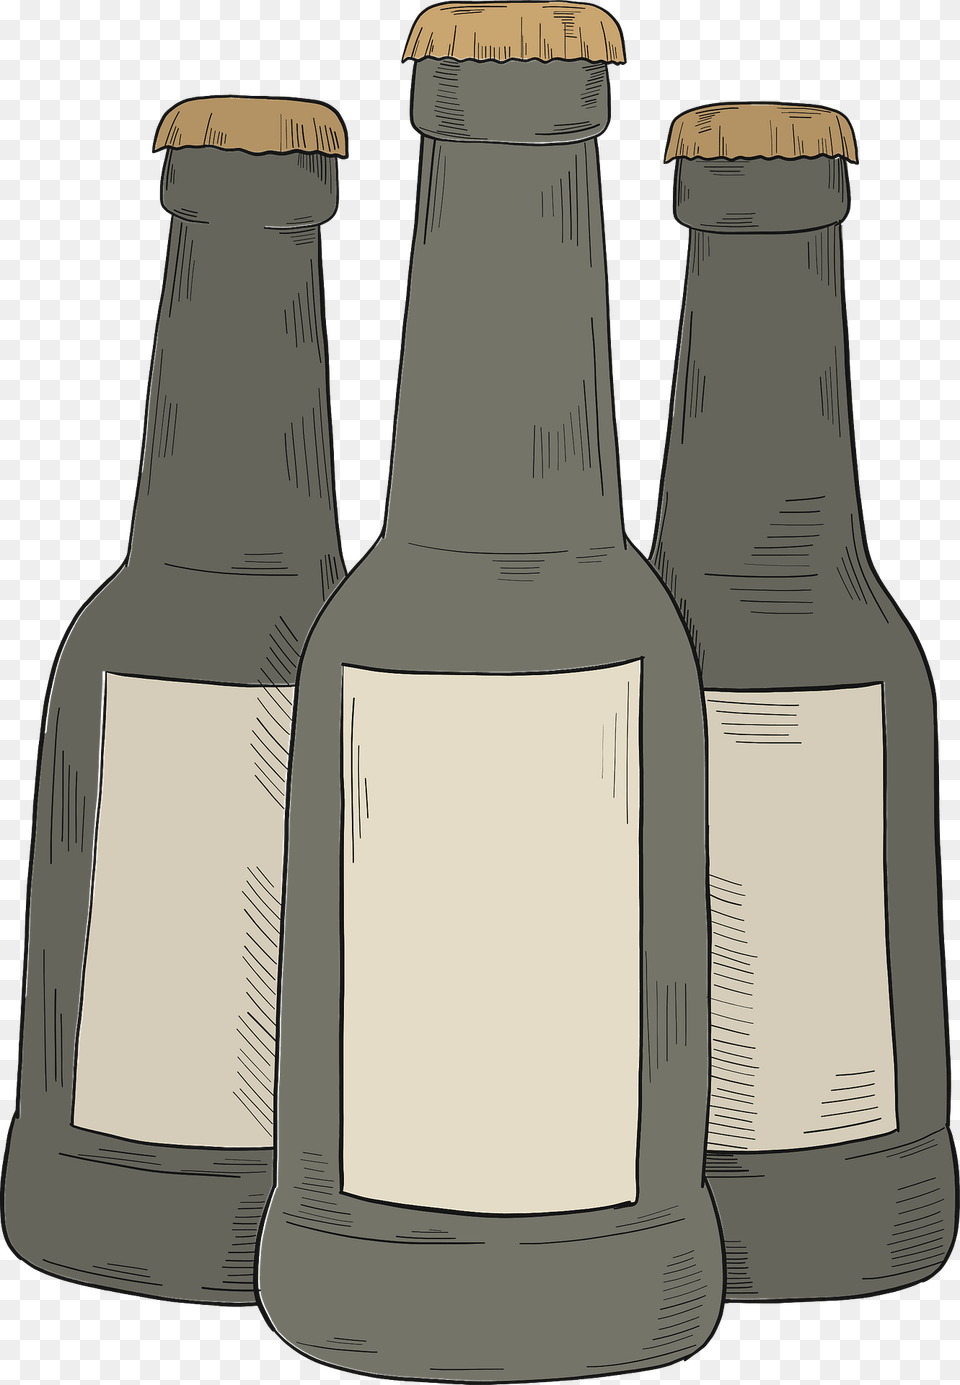 Beer Bottles Clipart, Alcohol, Beer Bottle, Beverage, Bottle Free Png Download